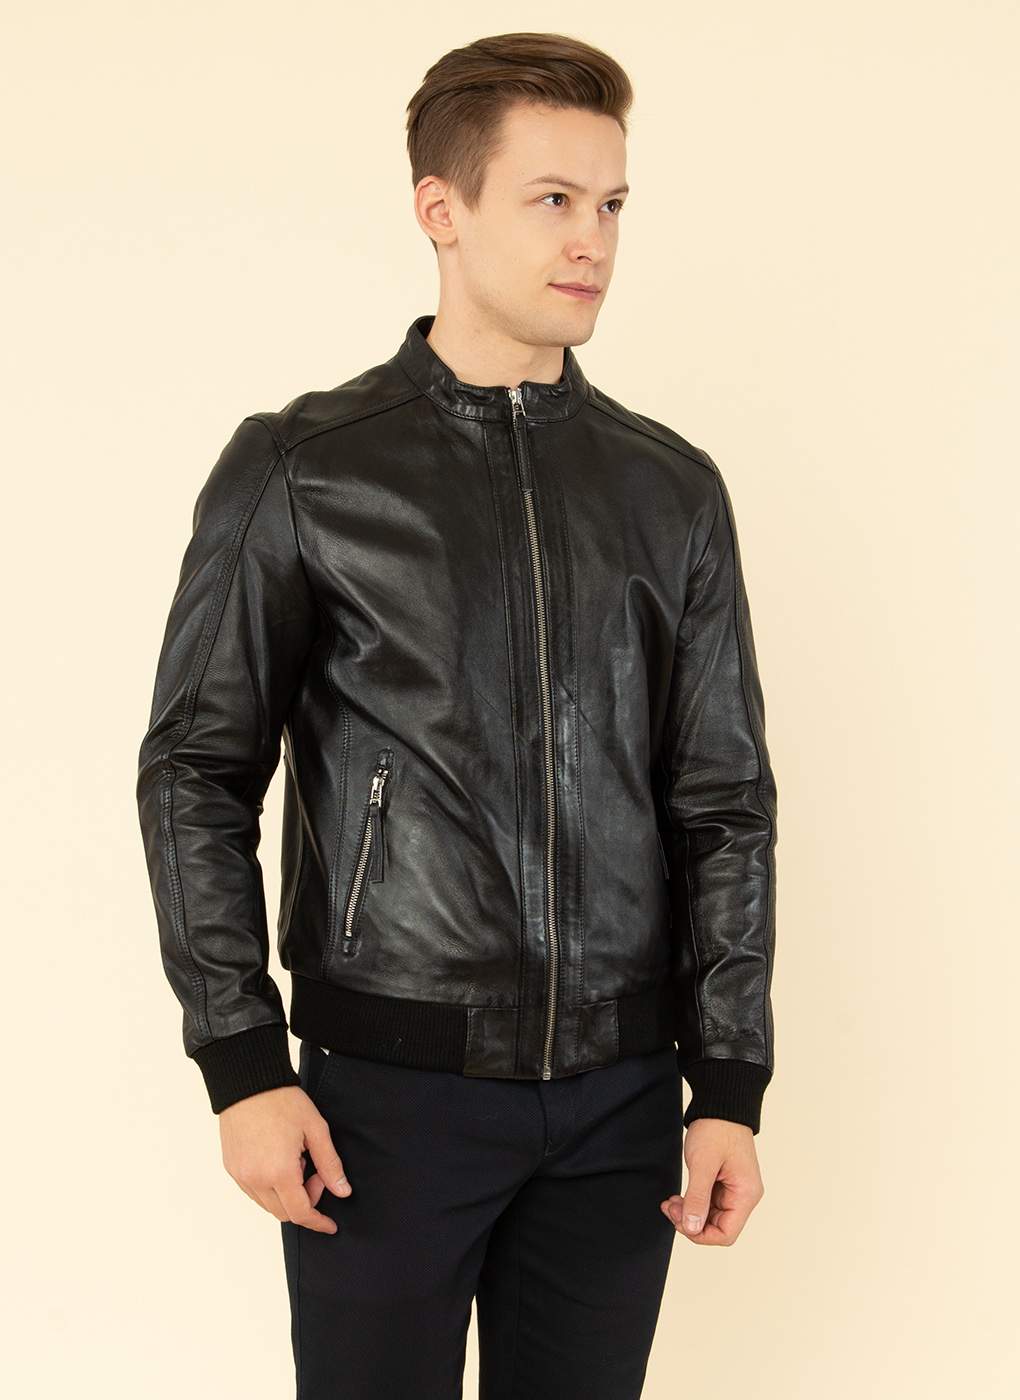 Кожаная куртка мужская Каляев 55185 черная 60 RU